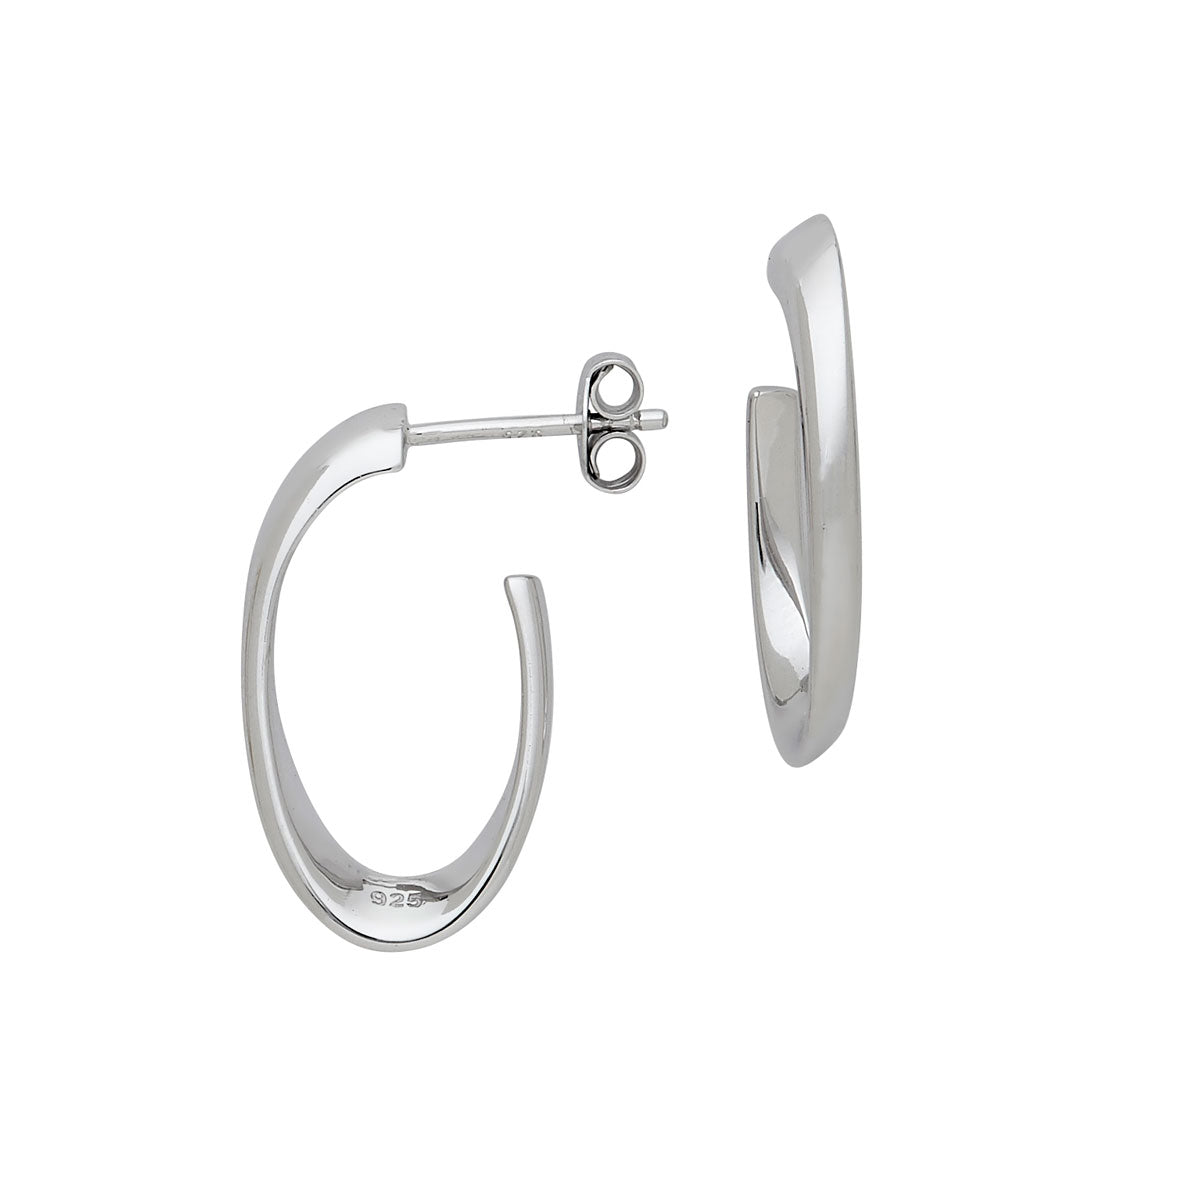 Silver Angled Hoop Earrings